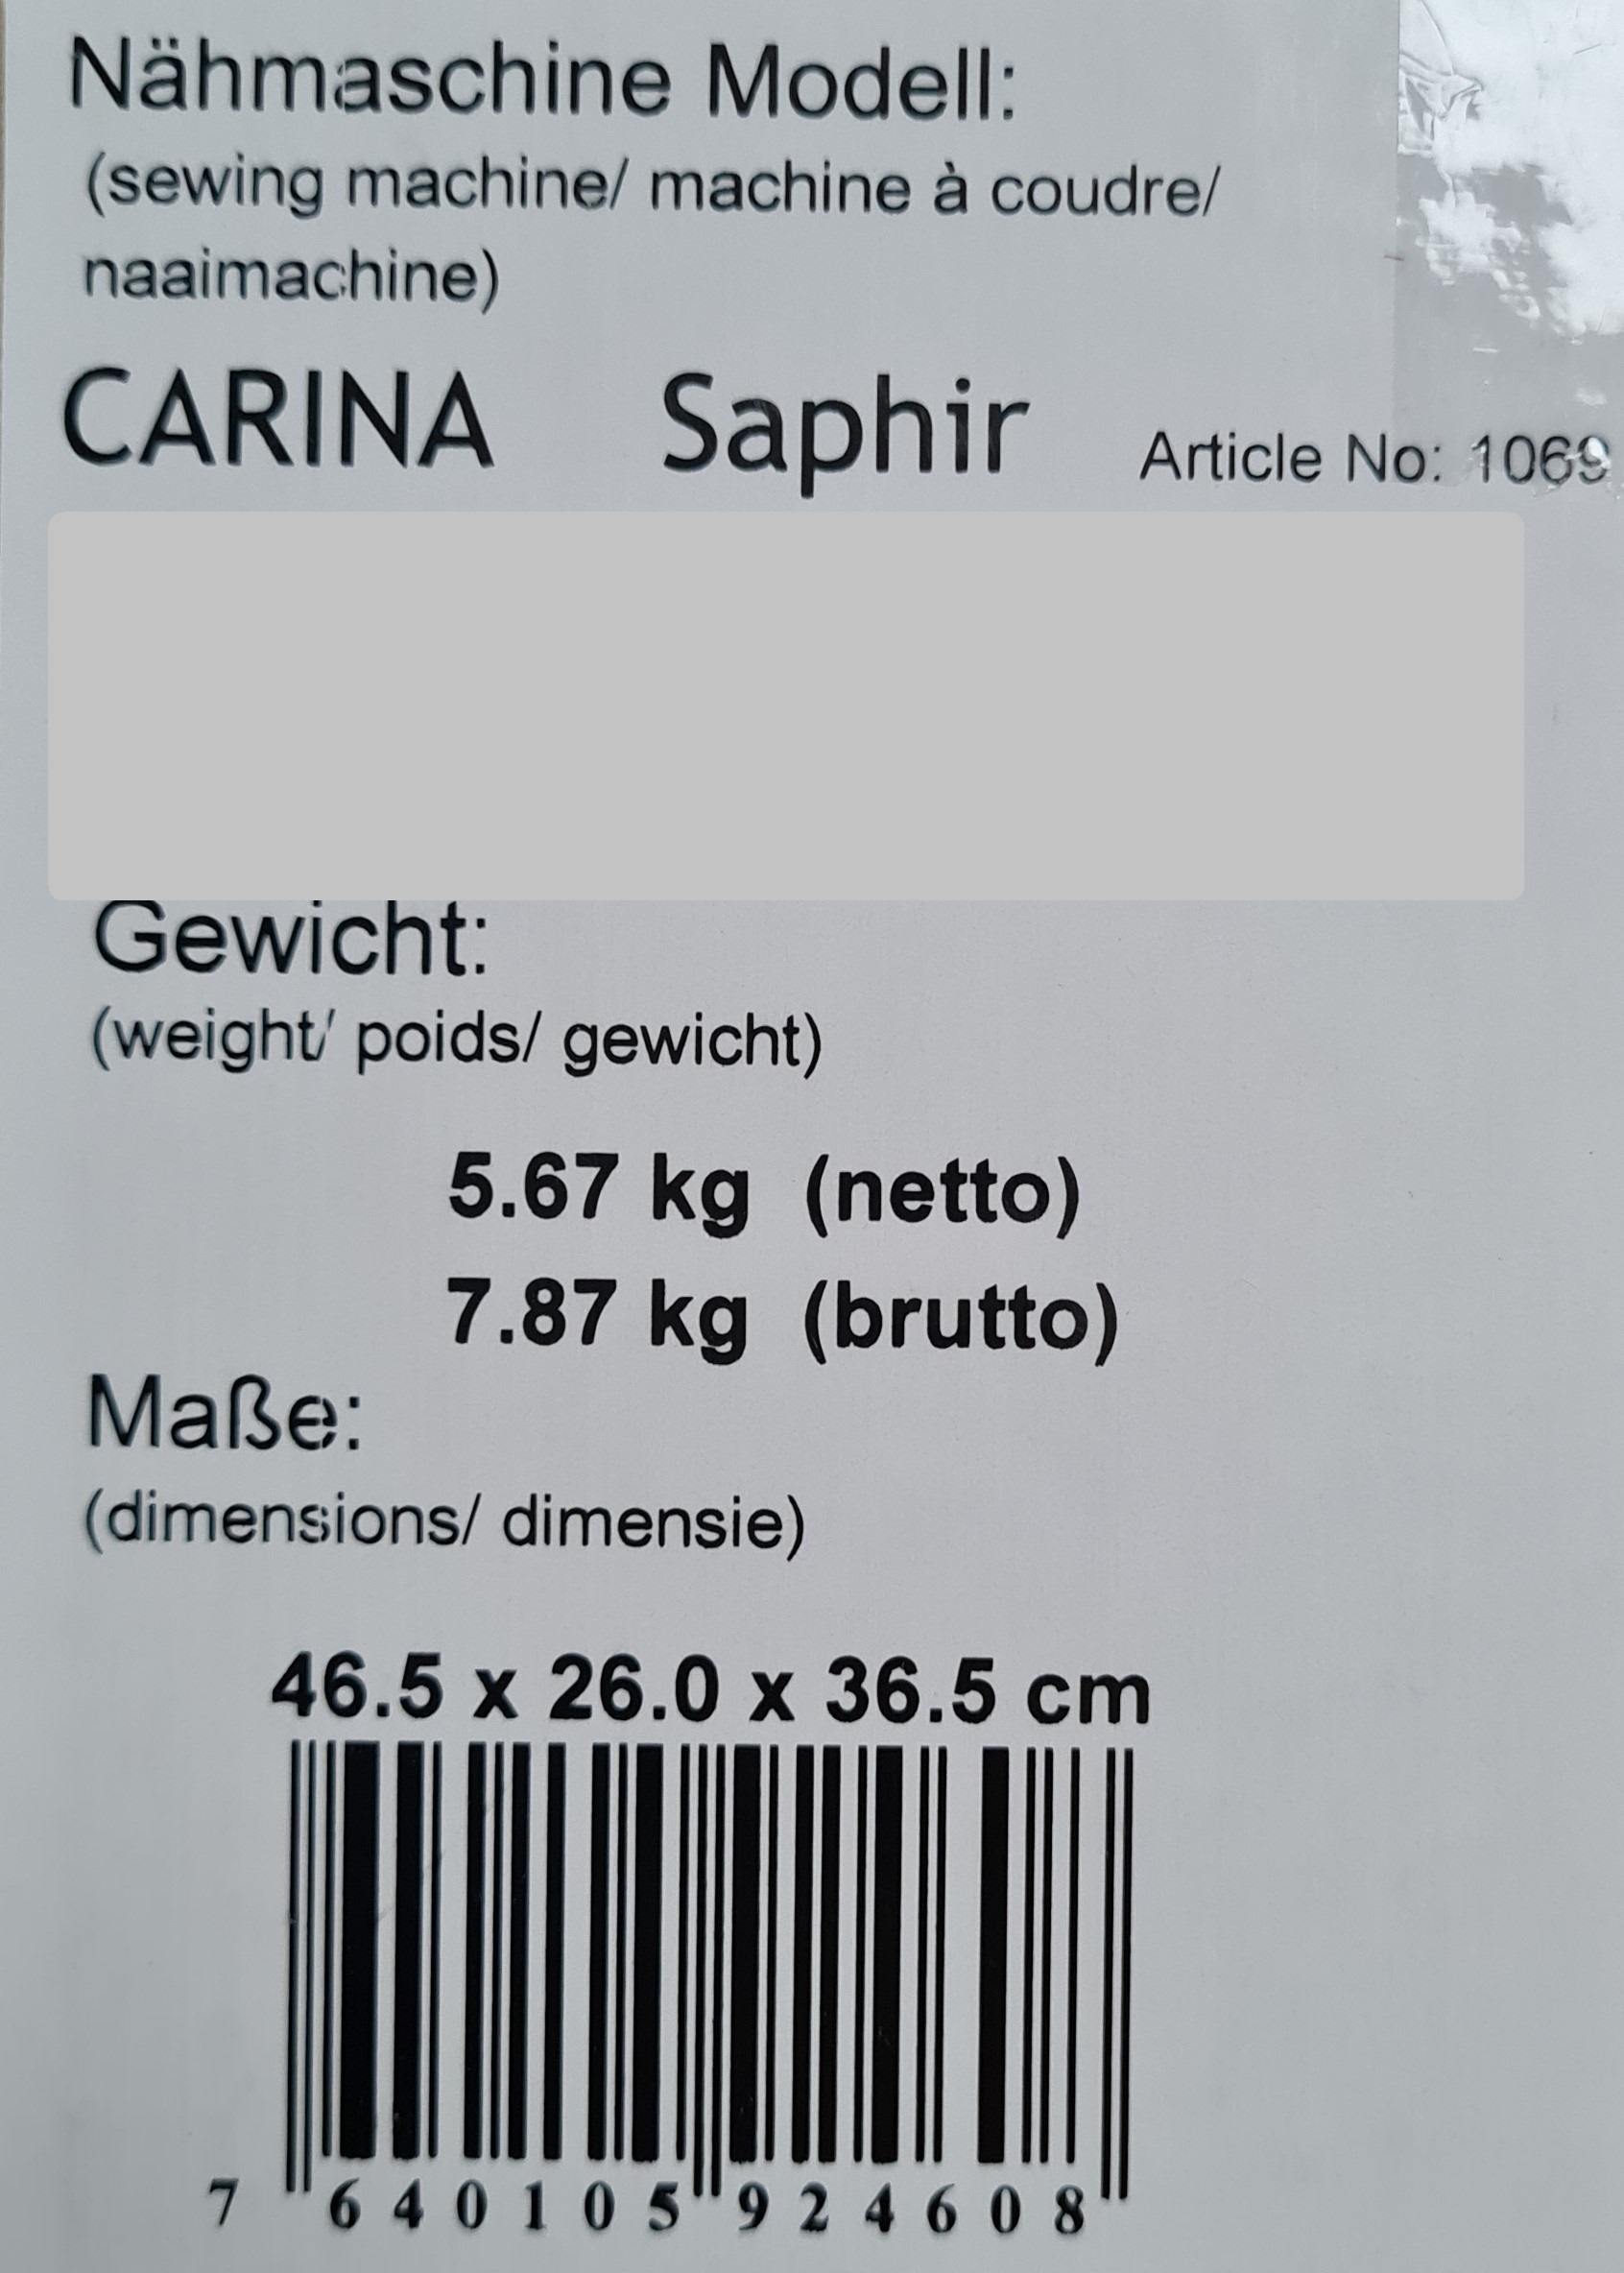 CARINA Saphir vollautomatische Carina (11 Nähmaschine Knopflöcher) Nähmaschine